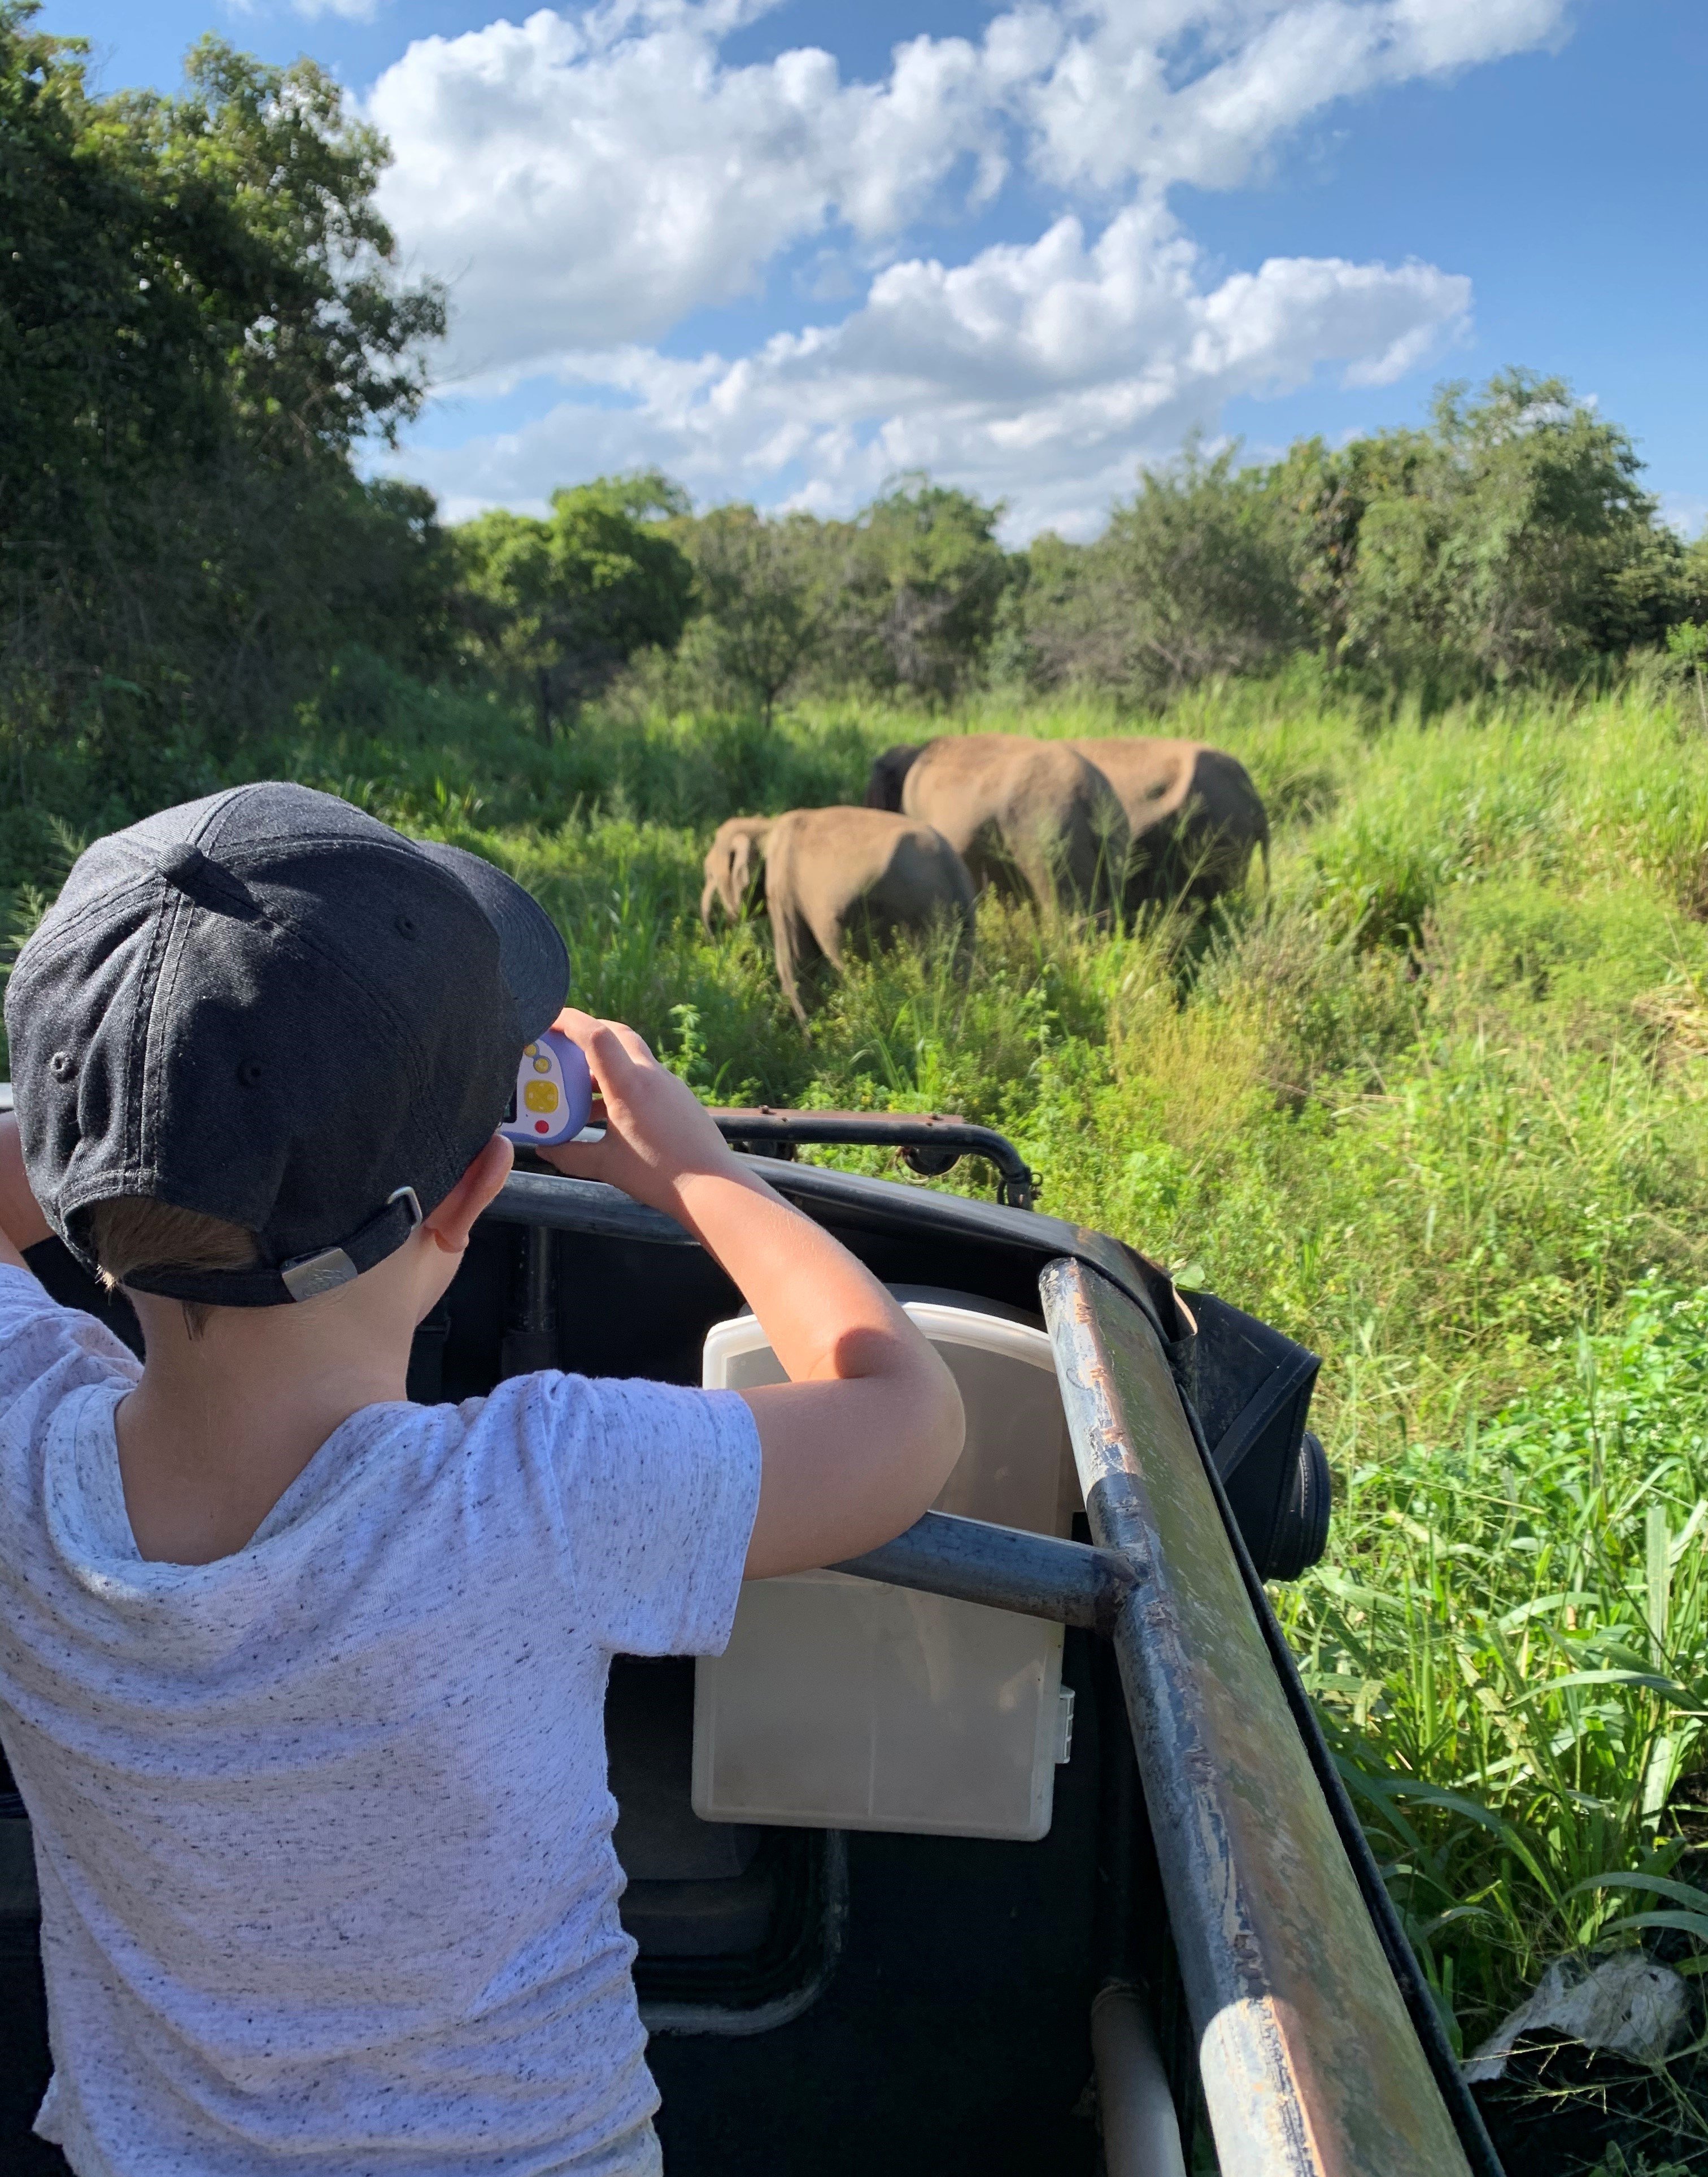 Fernreiseziele mit Kindern im Sommer - Tipps für Fernreisen im Sommer mit Kindern - Kind fotografiert Elefanten